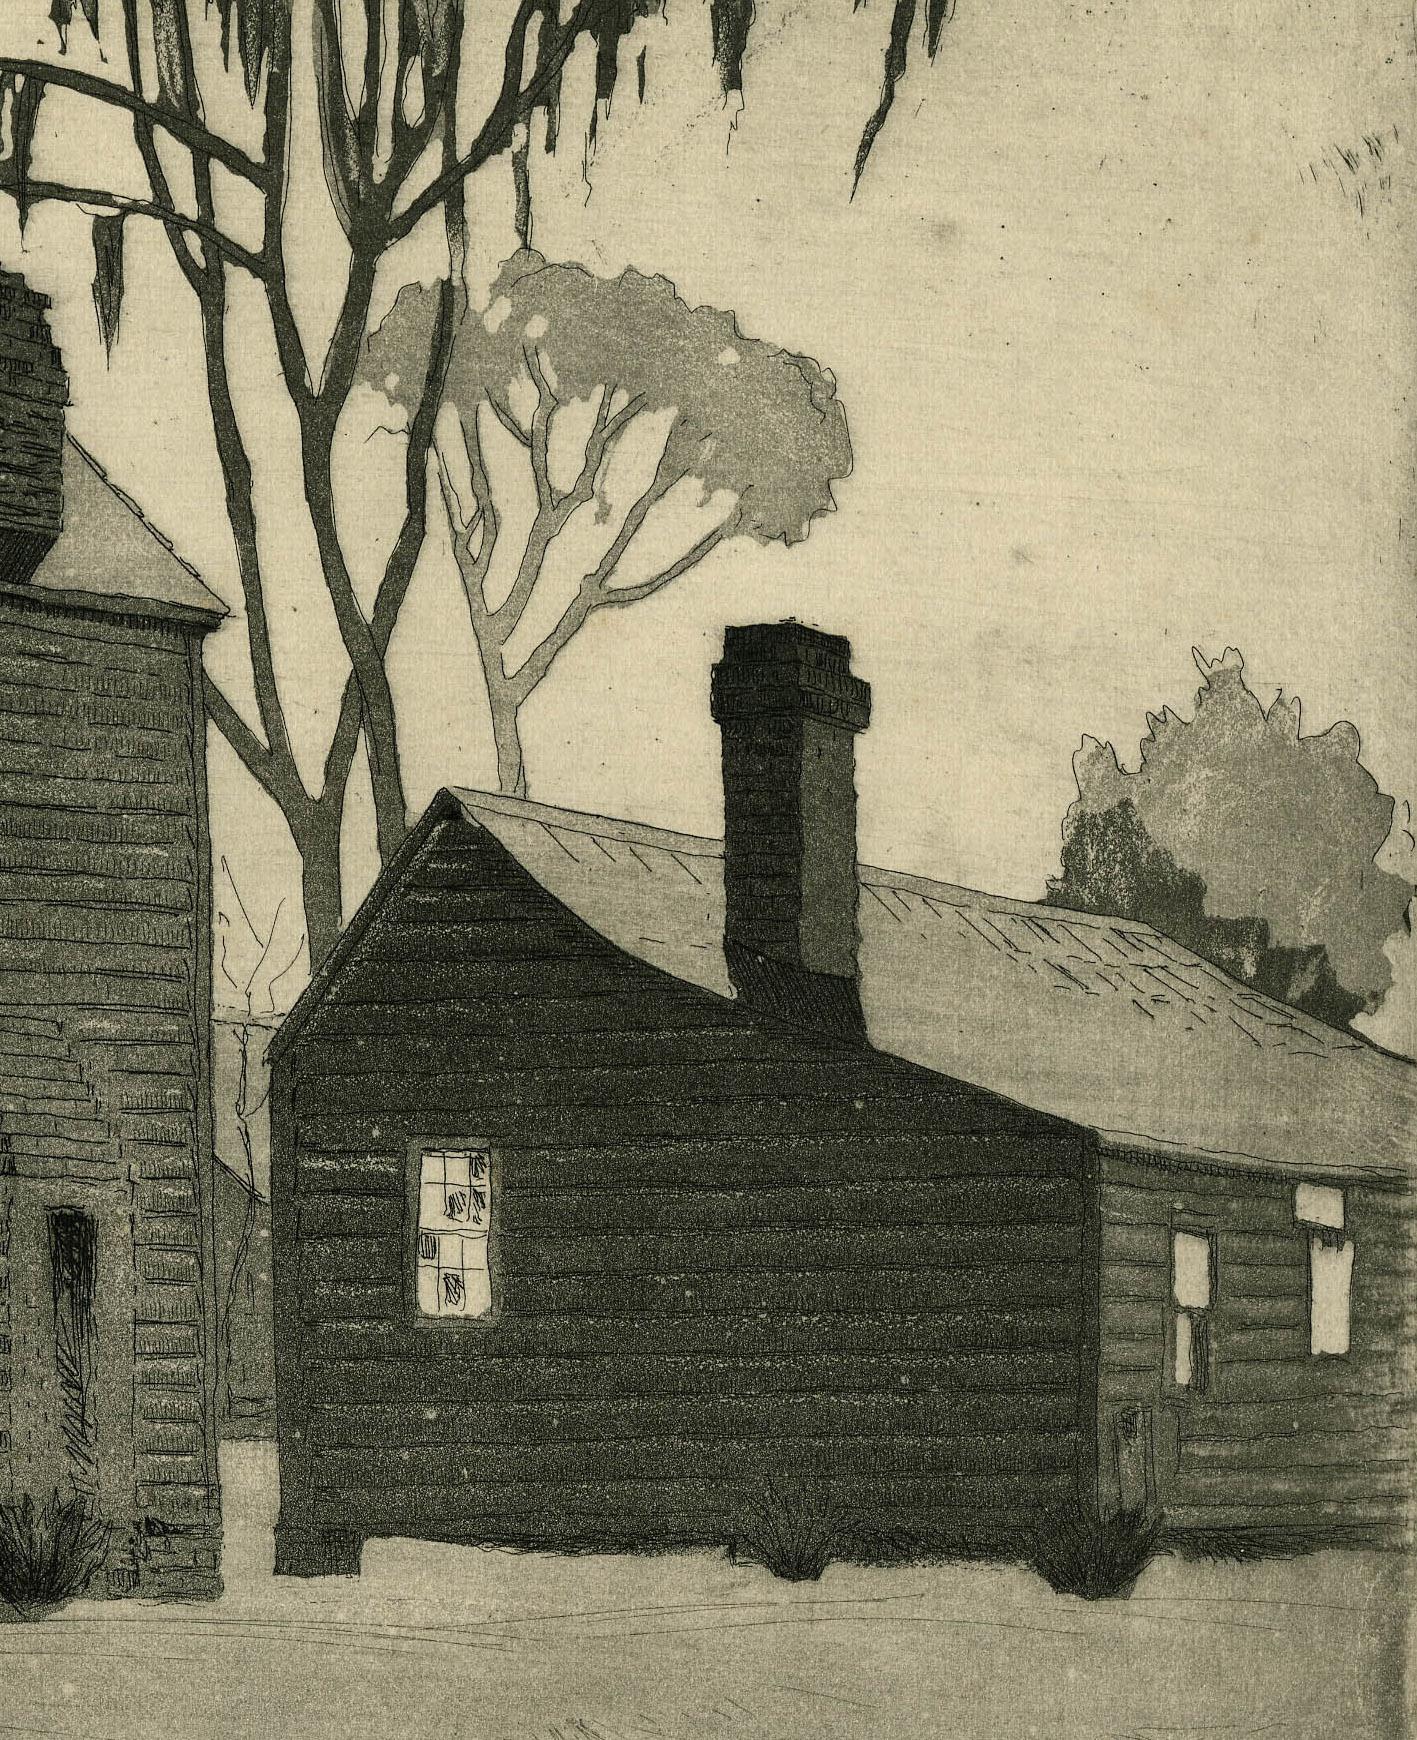 Desolation, A.C.C. ou Deserted Cabins, Beauford, A.I.C. - Impressionnisme américain Print par Louis Oscar Griffith